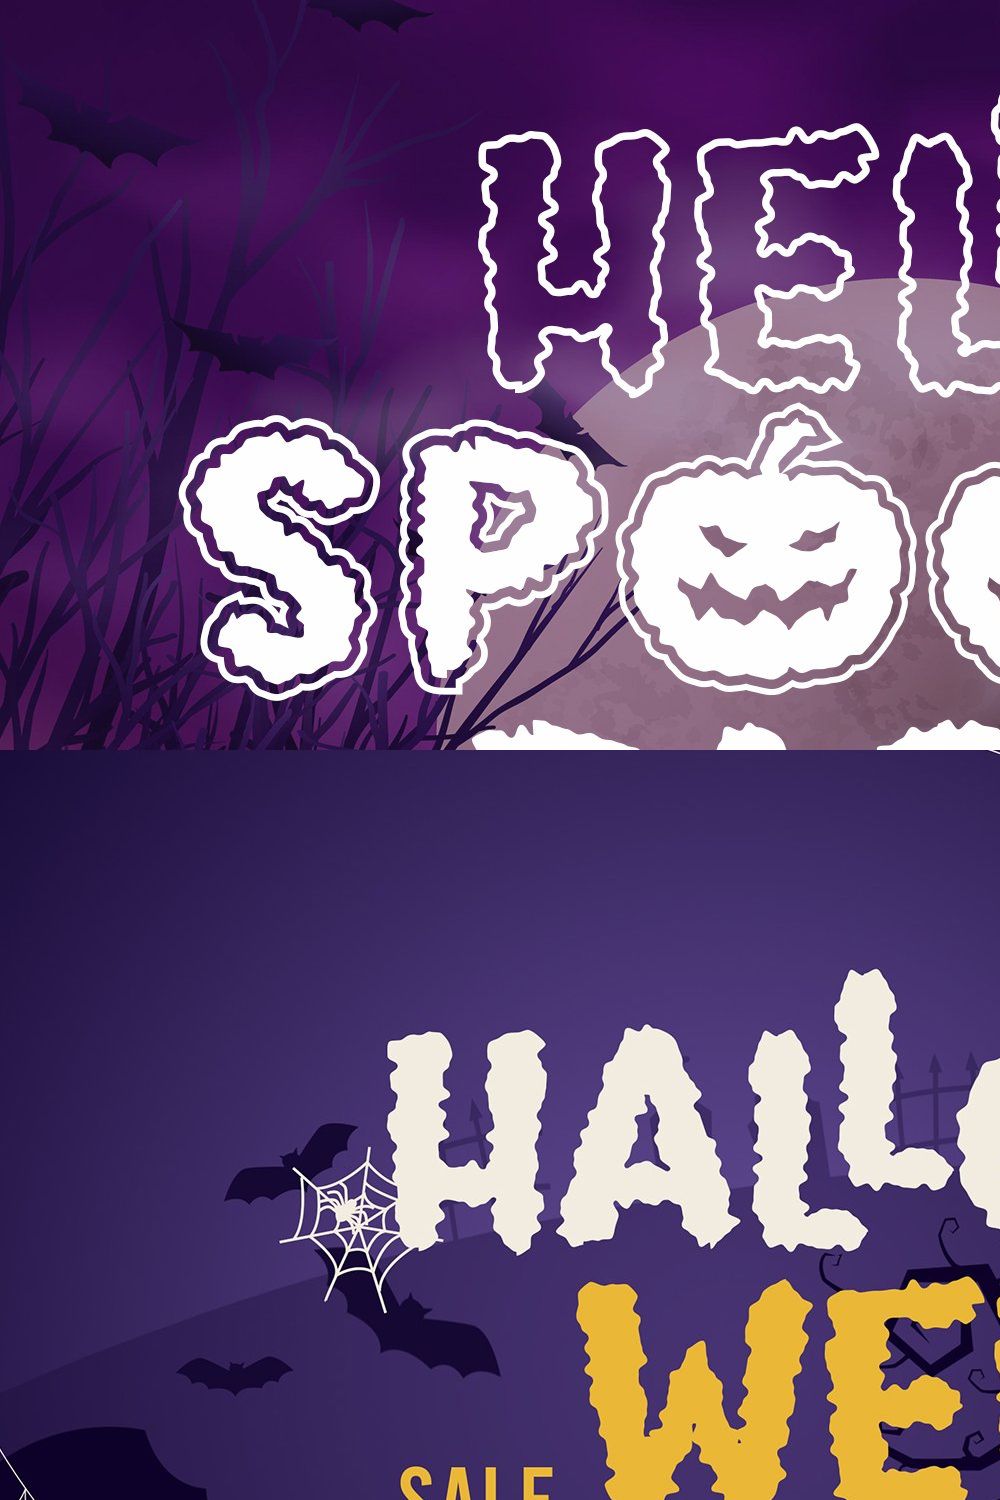 Spooky Party Font | Font Trio pinterest preview image.